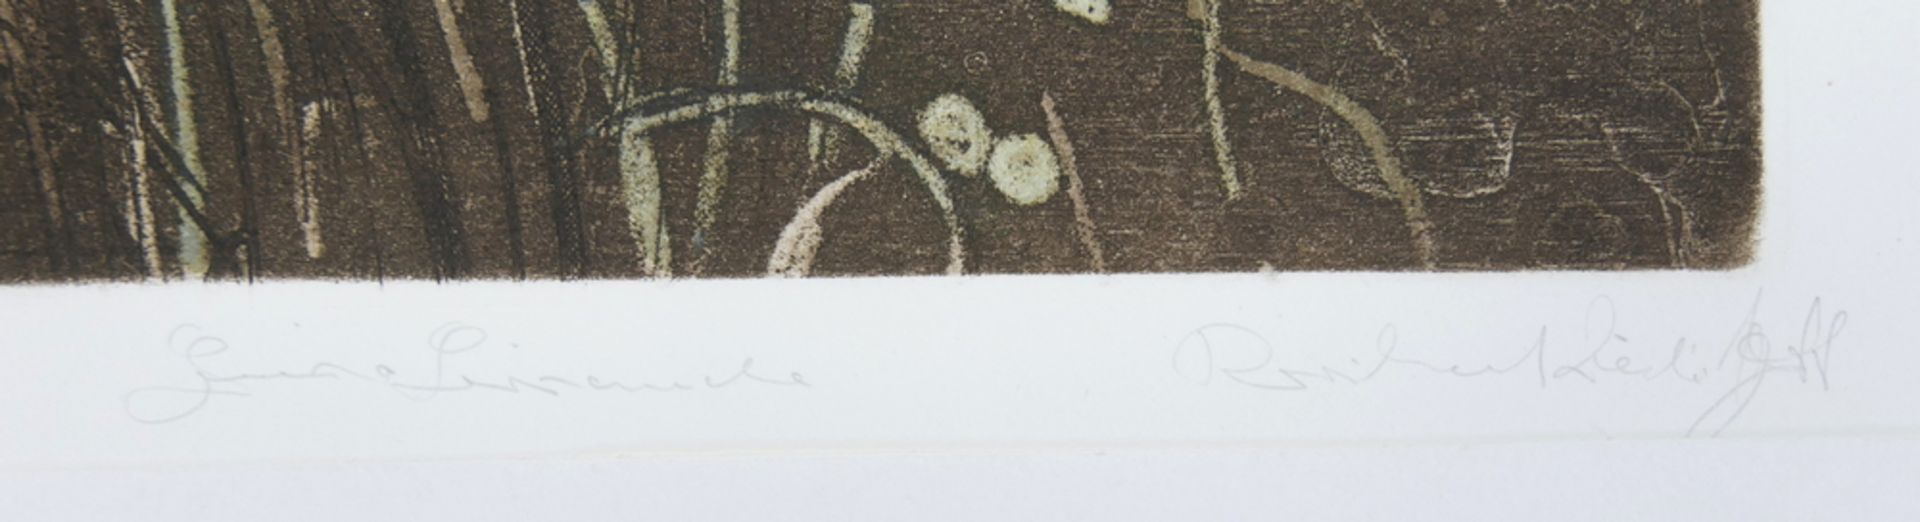 Druckgraphik "Gräser" unleserliche Signatur, handsigniert. Blatt 36/75. Blattmaße: Höhe ca. 65,5 cm, - Image 2 of 2